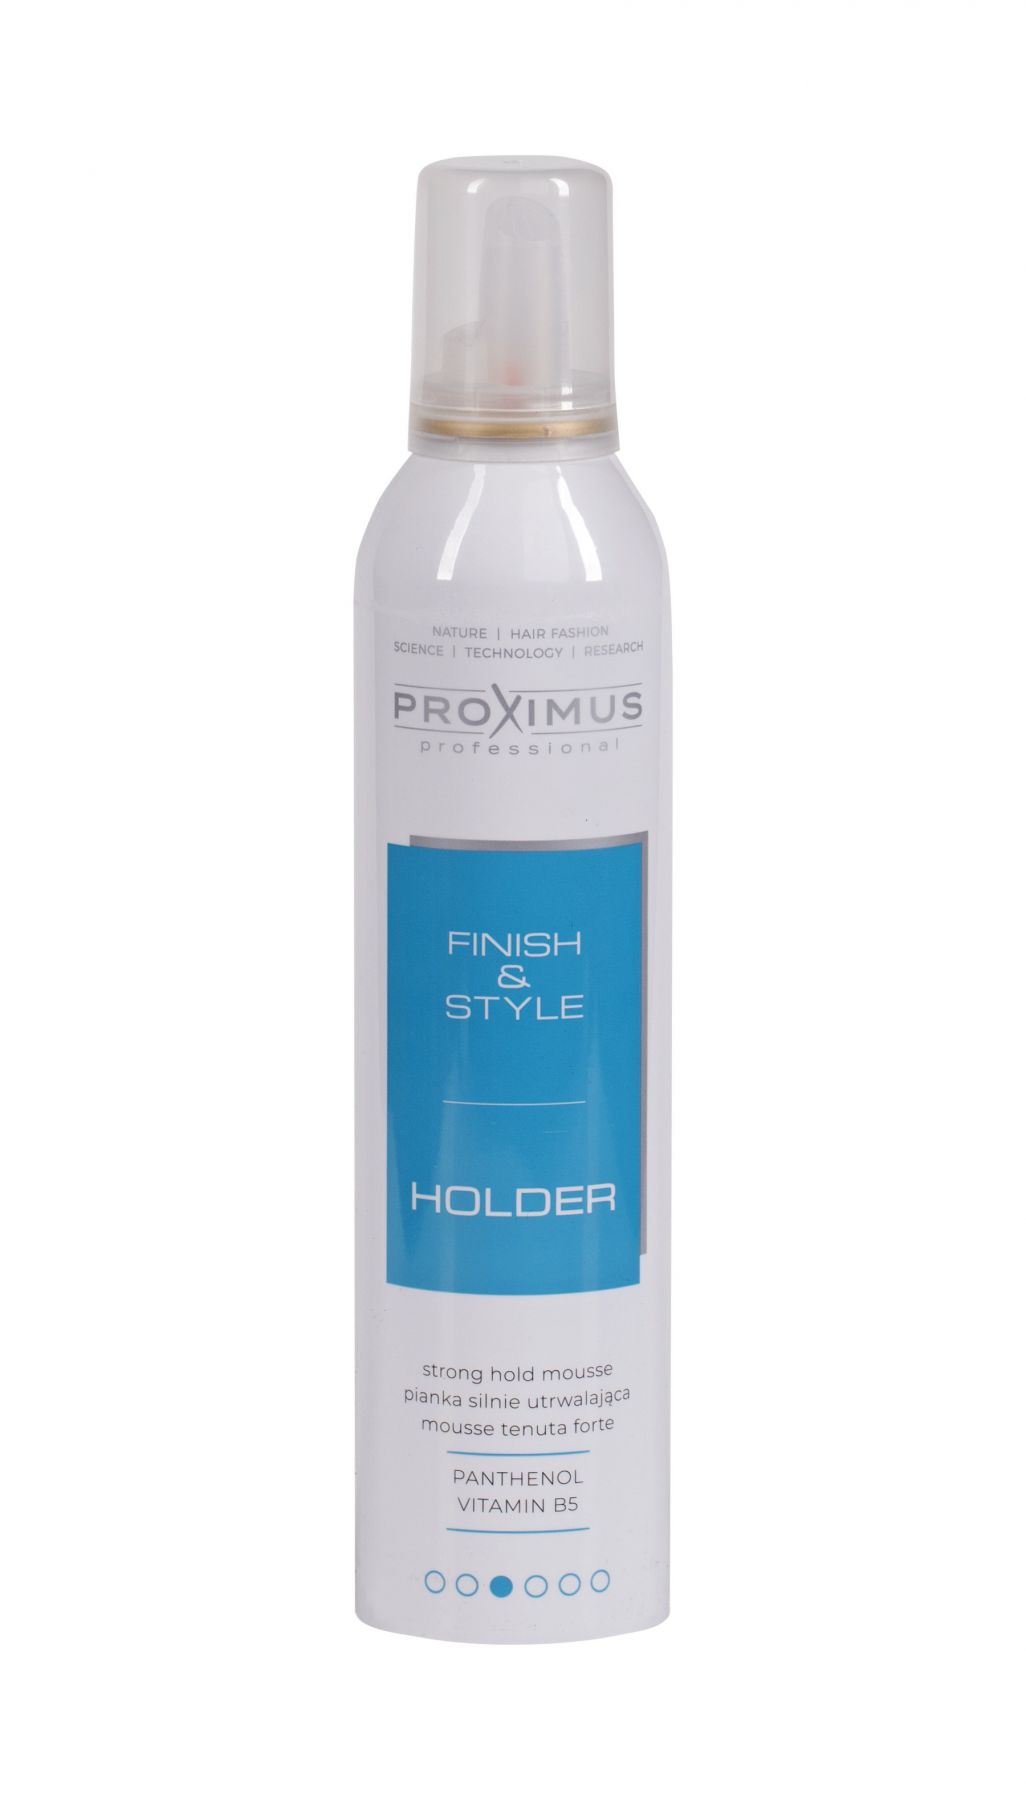 PROXIMUS Holder - nowa pianka mocno utrwalająca już w sprzedaży